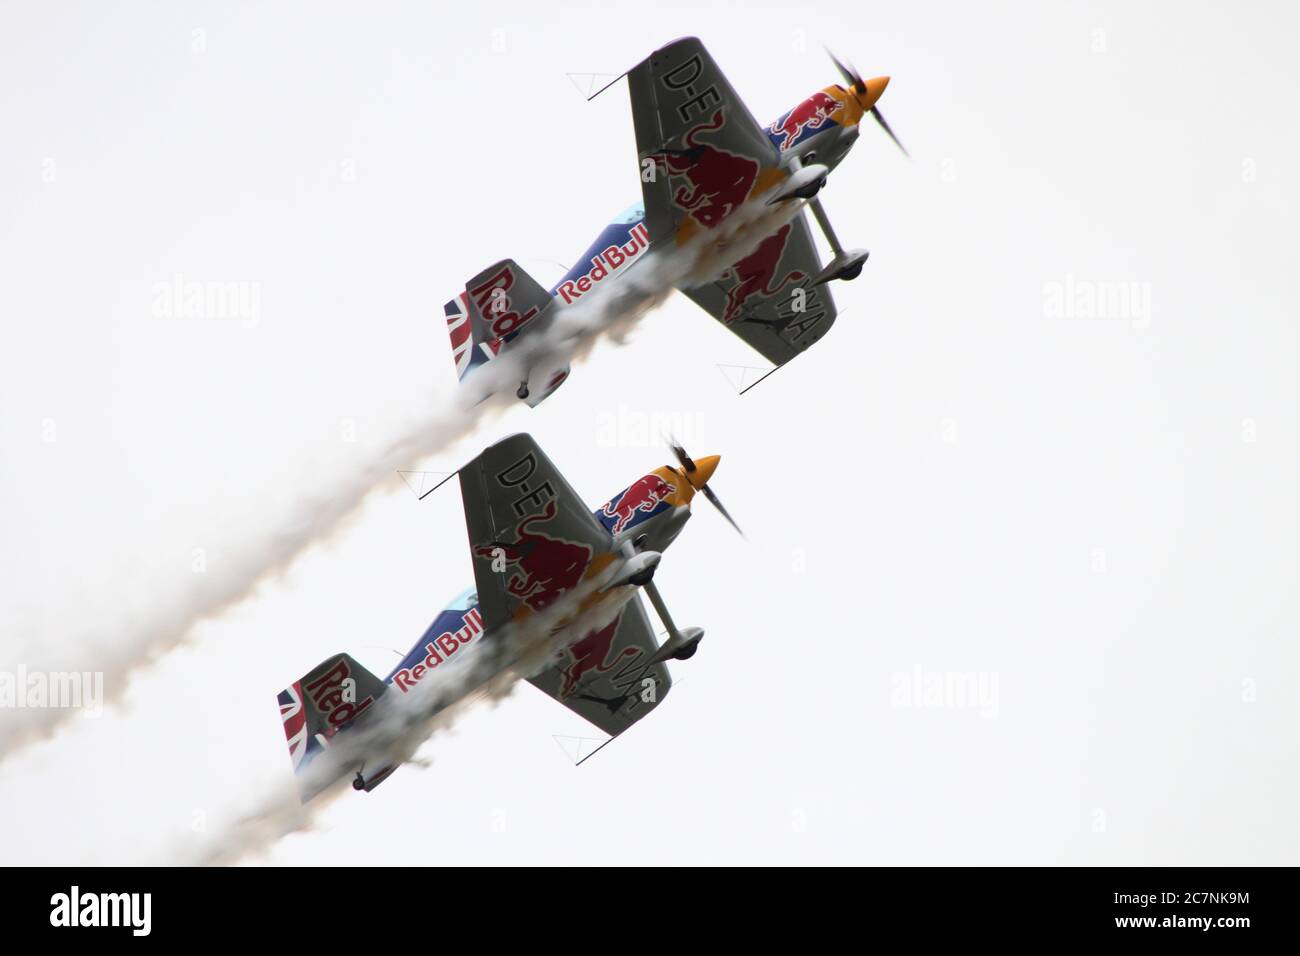 Das Red Bull Matadors Kunstflugteam, das XtremeAir Sbach 300s (oder ExtremeAir XA-41s) fliegt, tritt 2016 bei East Fortune auf. Stockfoto